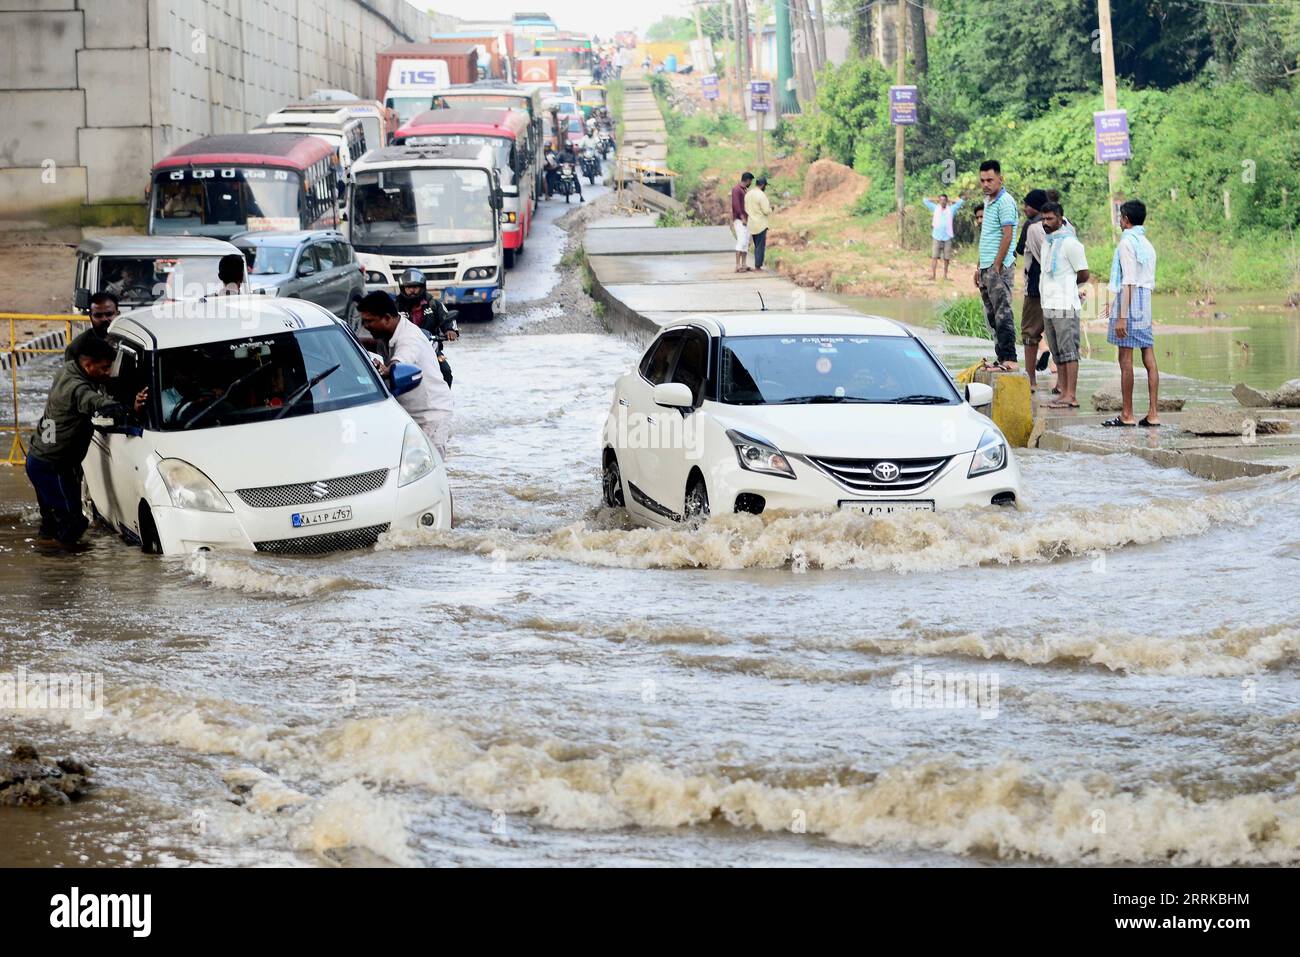 220830 -- BANGALORE, le 30 août 2022 -- des véhicules roulent sur une route inondée après de fortes pluies à Bangalore, en Inde, le 30 août 2022. Str/Xinhua INDE-BANGALORE-INONDATION KASHIFxMASOOD PUBLICATIONxNOTxINxCHN Banque D'Images